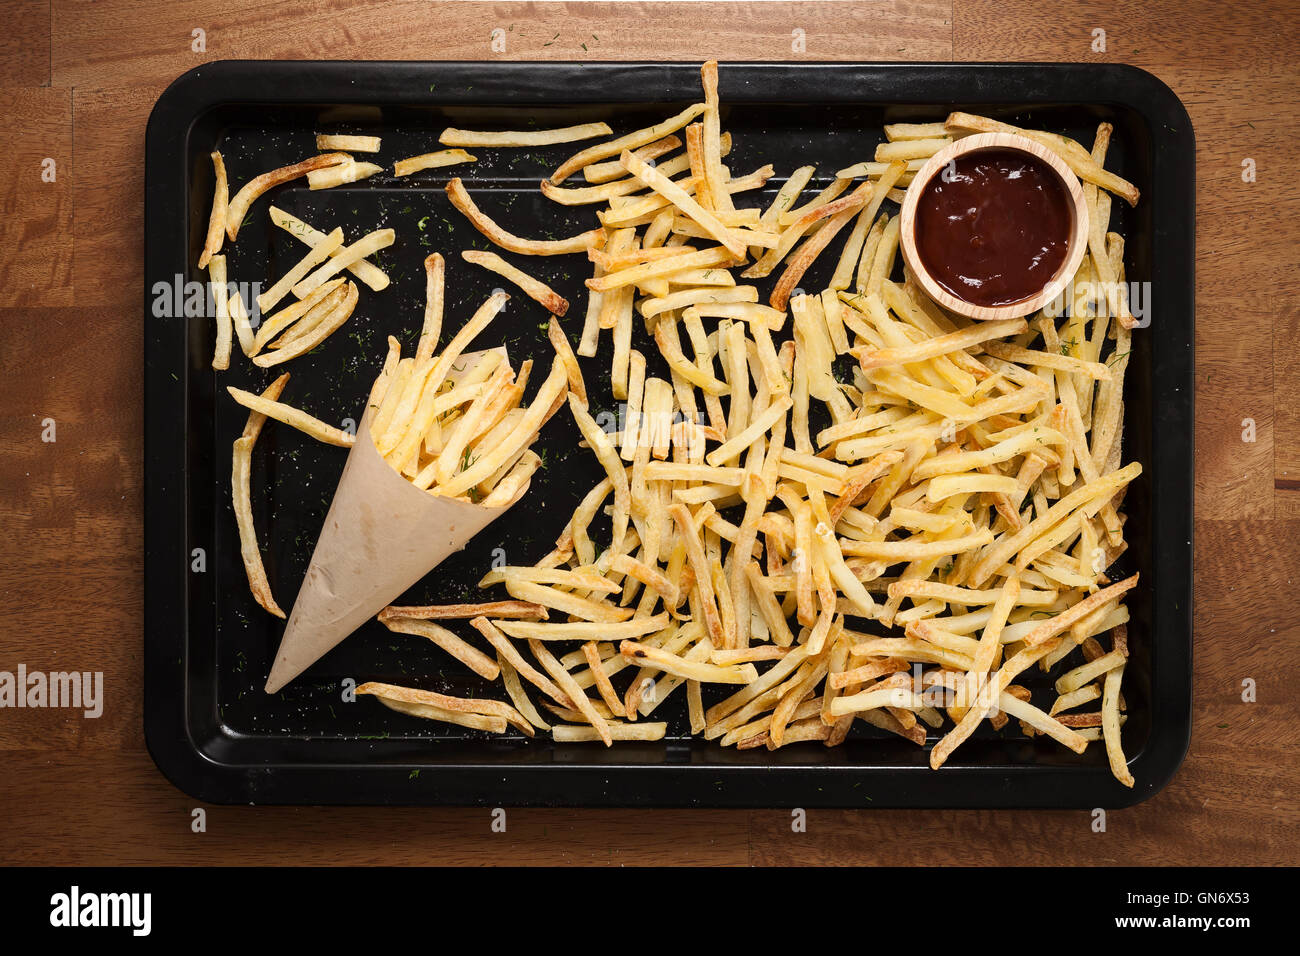 Fries ketchup francese ancora vita piatta aneto laici sale alle erbe aromatiche junk un fast food Sfondo legno Foto Stock